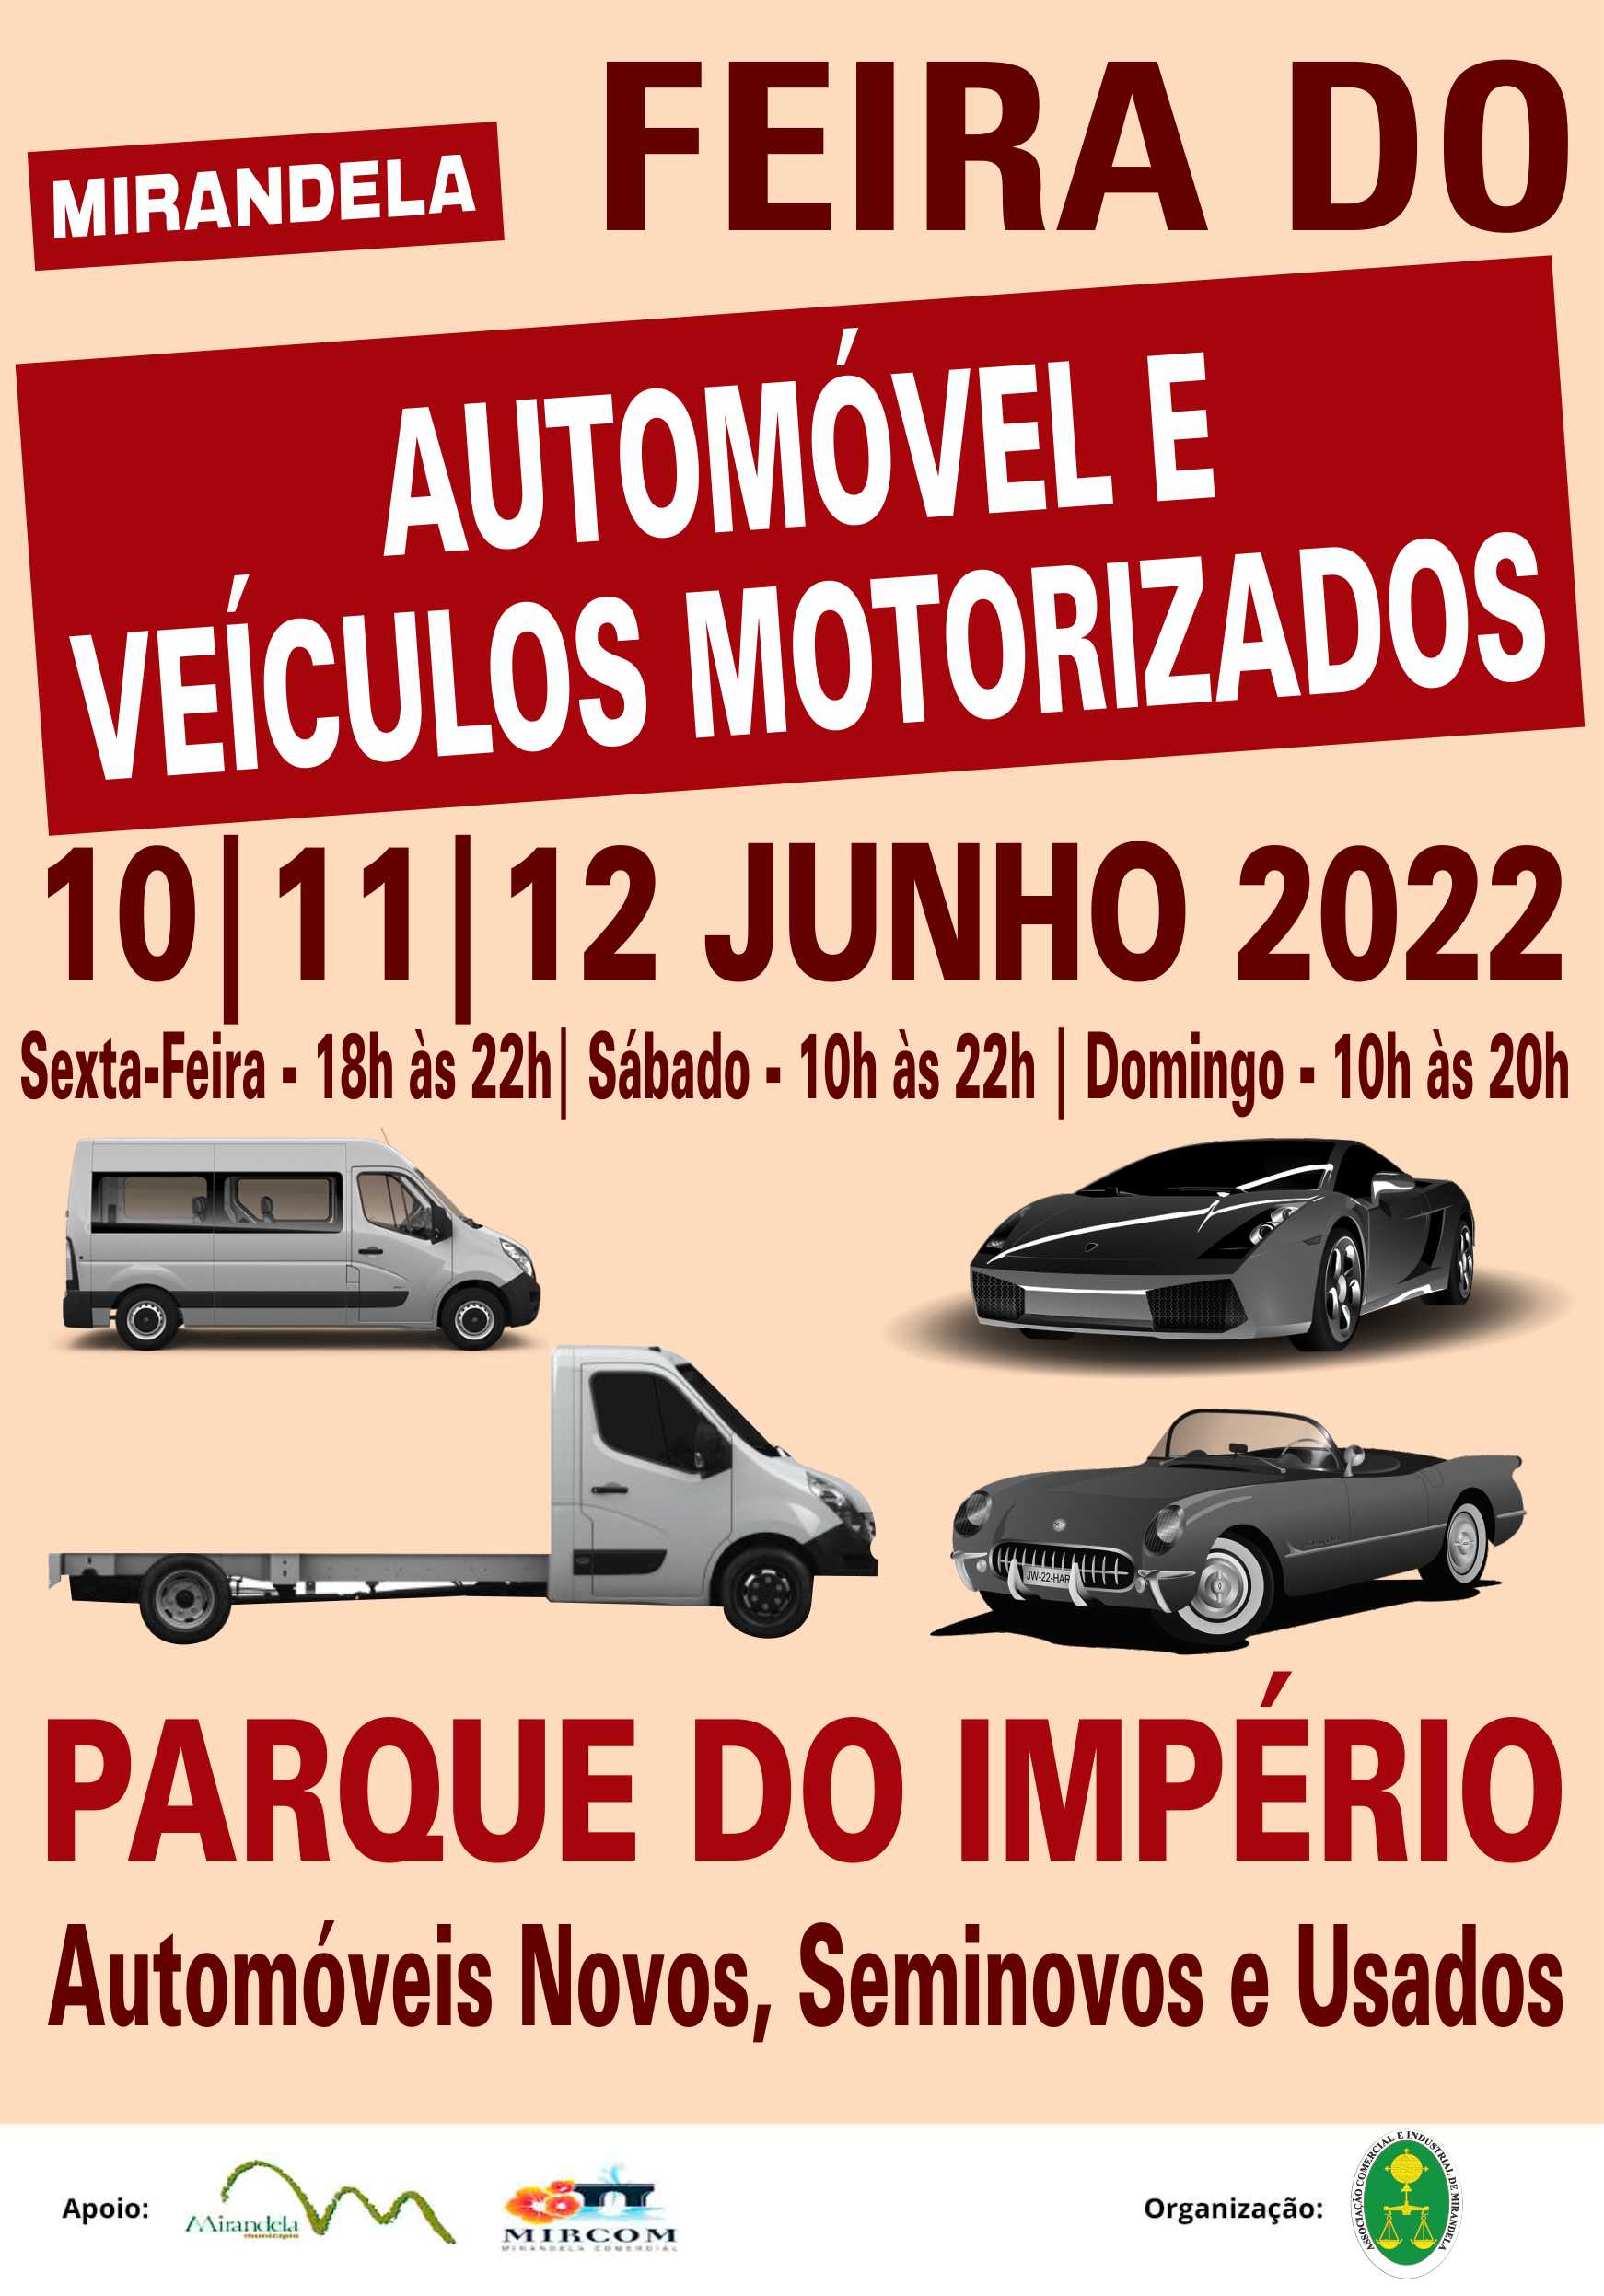 You are currently viewing FEIRA DO AUTOMÓVEL E VEÍCULOS MOTORIZADOS DE MIRANDELA